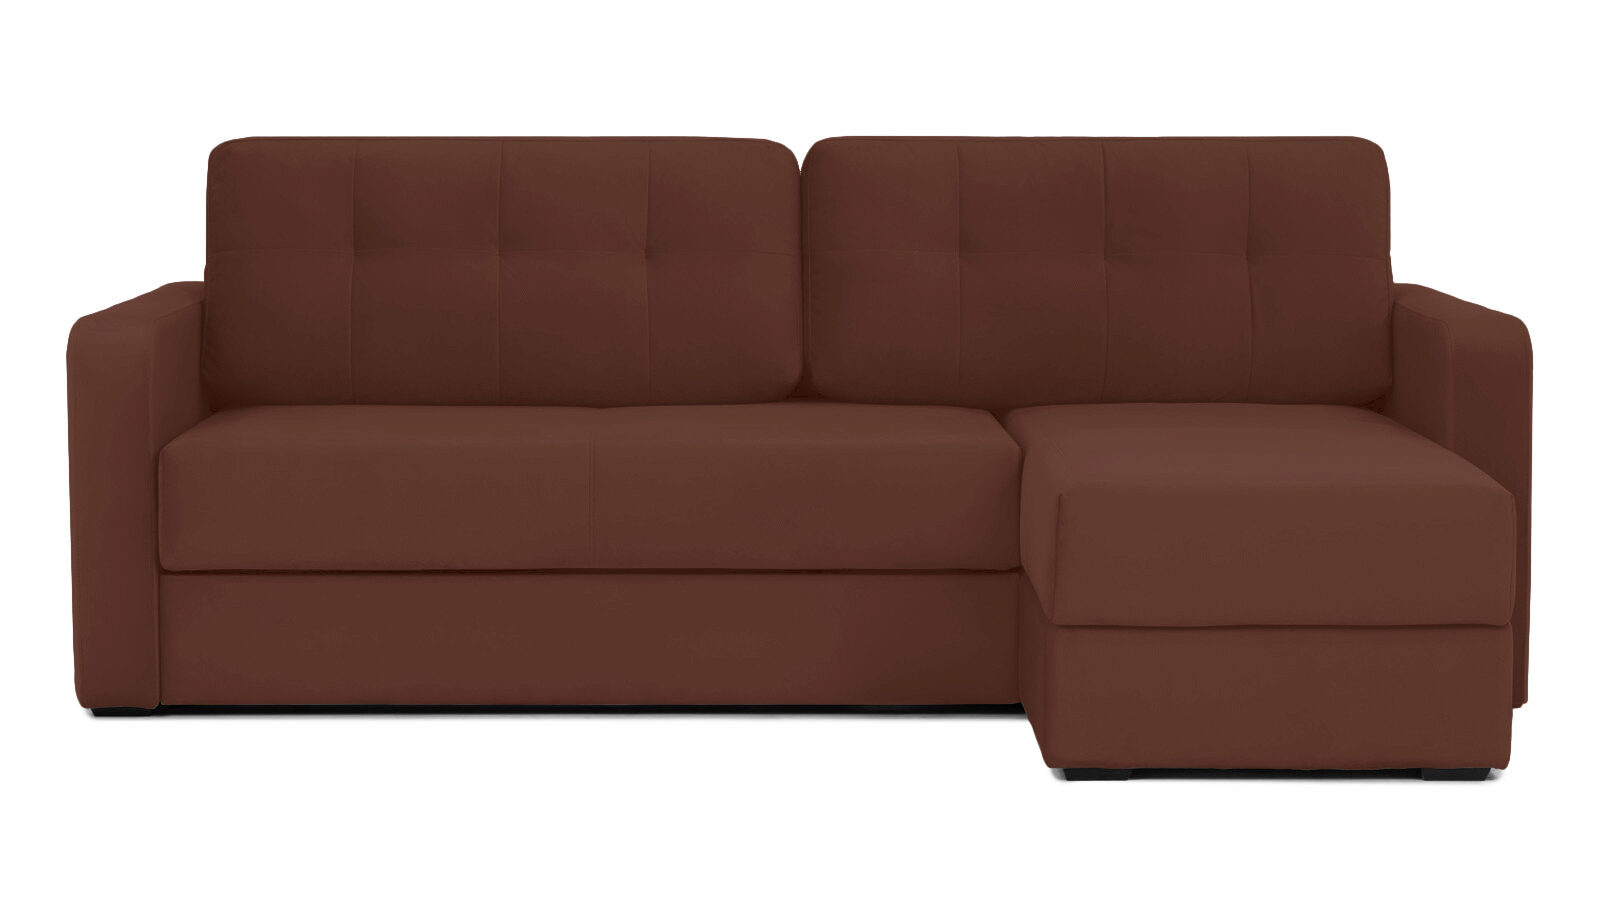 Угловой диван Loko Pro с широкими подлокотниками, с матрасом средней жесткости